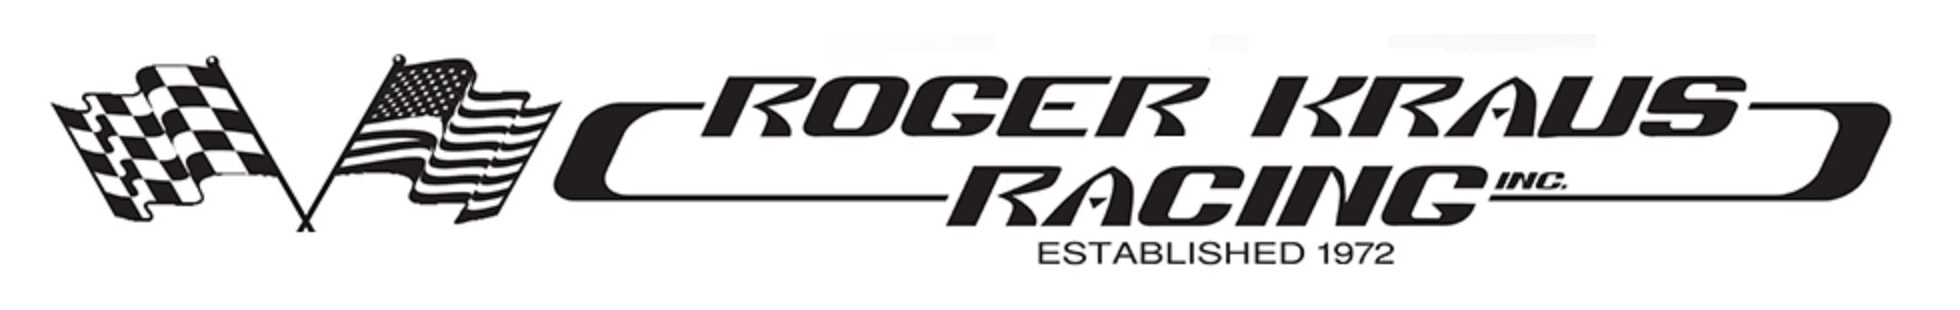 Roger Kraus Racing